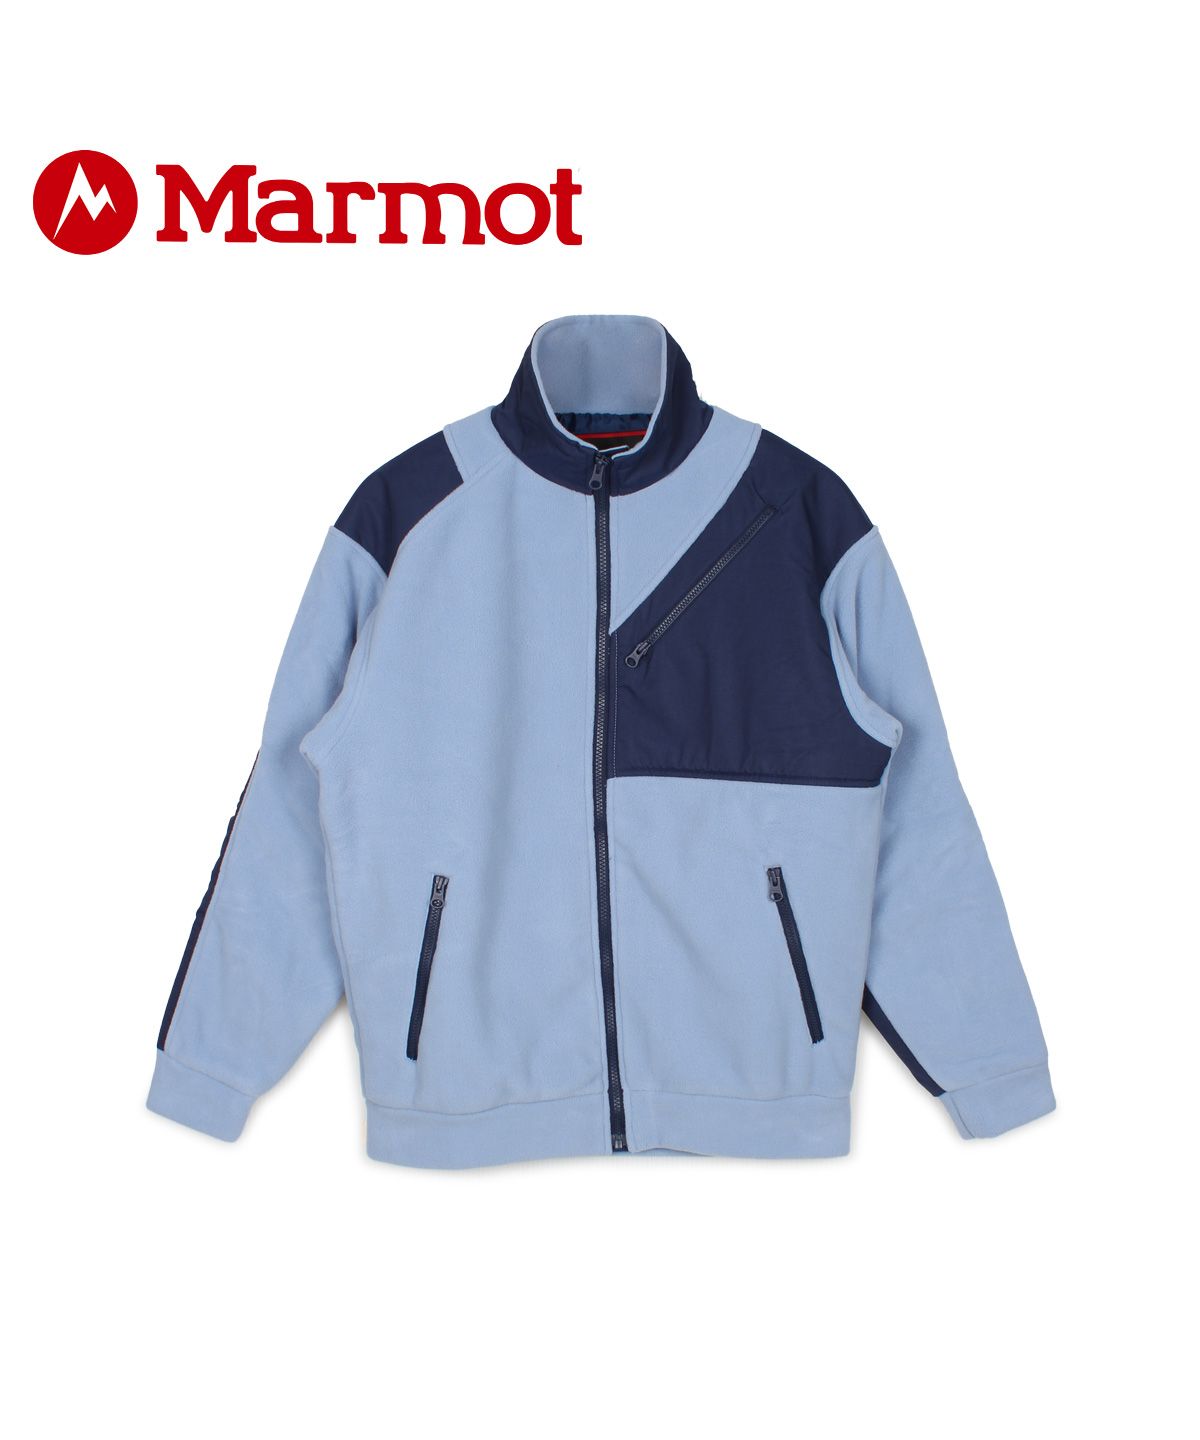 マーモット Marmot ジャケット フリースジャケット メンズ レディース 90 FLEECE JACKET ブルー TOUQJL39